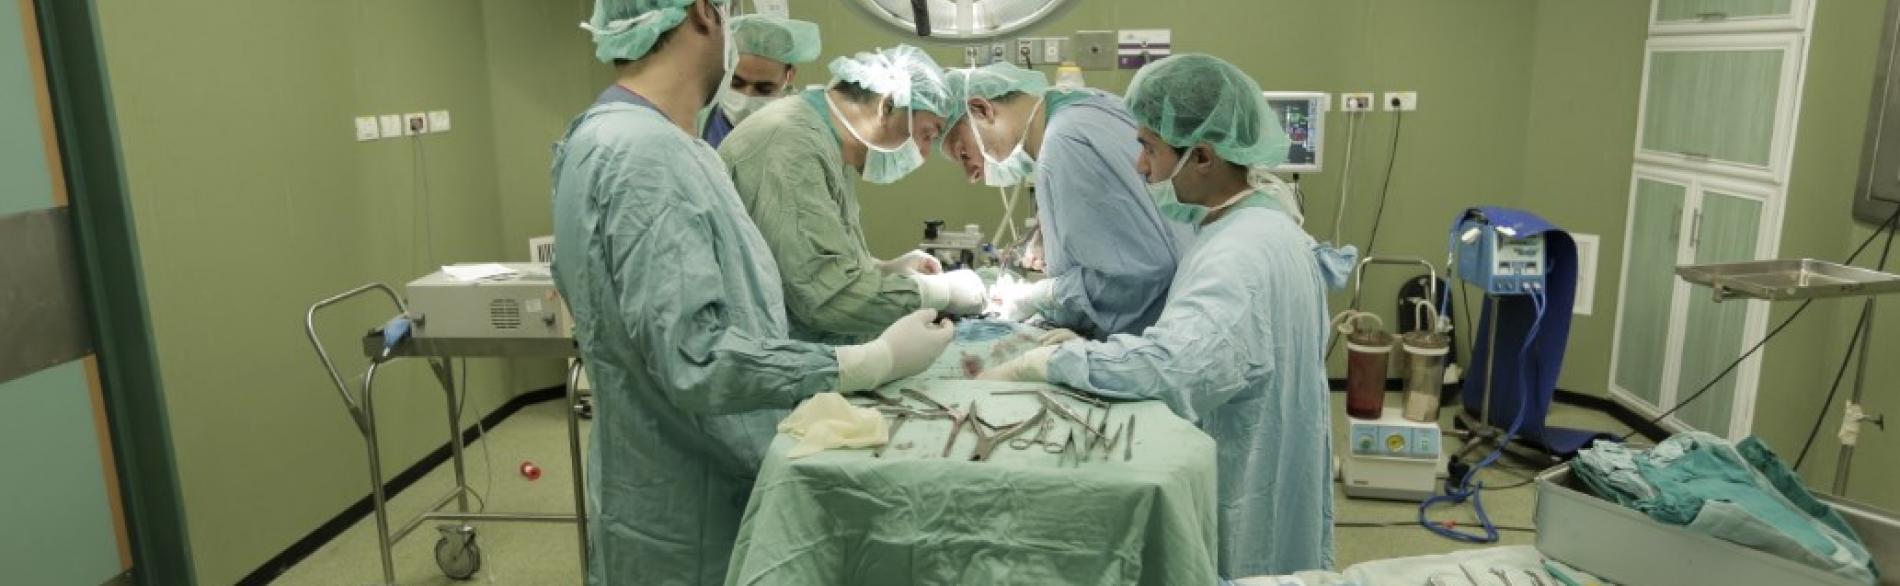 חדר ניתוח בבית החולים א־שיפא, אווקטובר 2015. תצלום: ארגון הבריאות העולמי